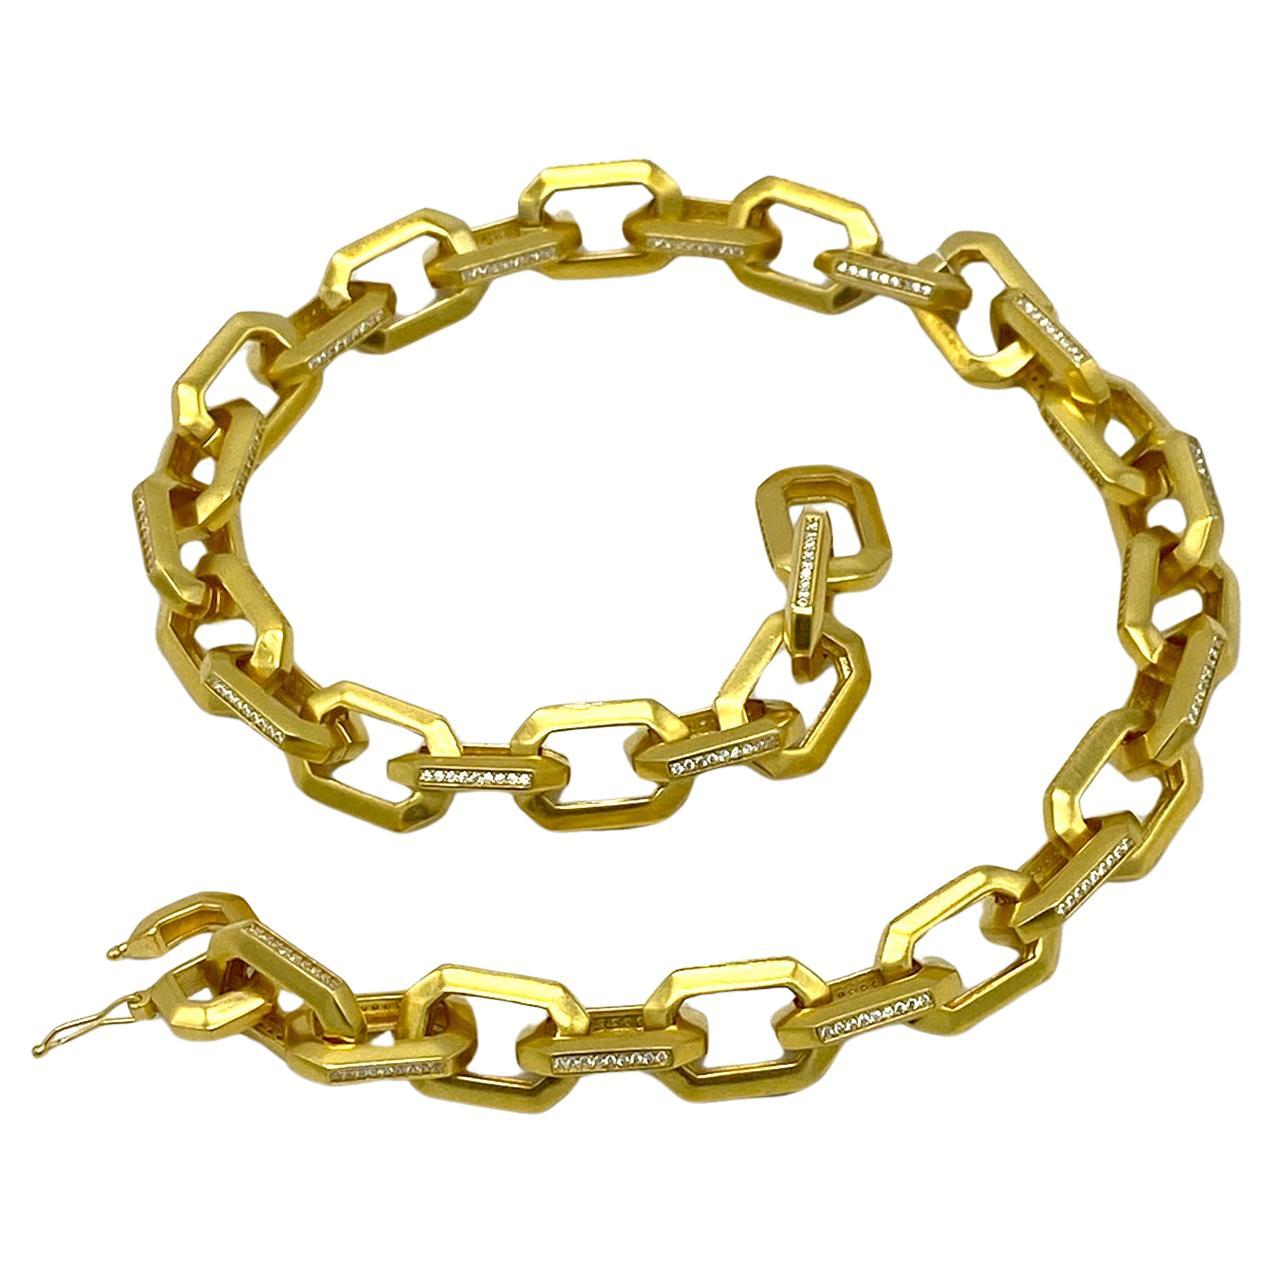 Dies ist eine neue CZ auf Goldkette Halskette. Diese Halskette hat eine schwere vergoldete 0,75 x 0,5 große Kette, die mit CZ an den Seiten der Glieder verziert ist. Sieht sehr nach 80er-Jahre-Moderne aus. Siehe unser ähnliches Armband, das separat